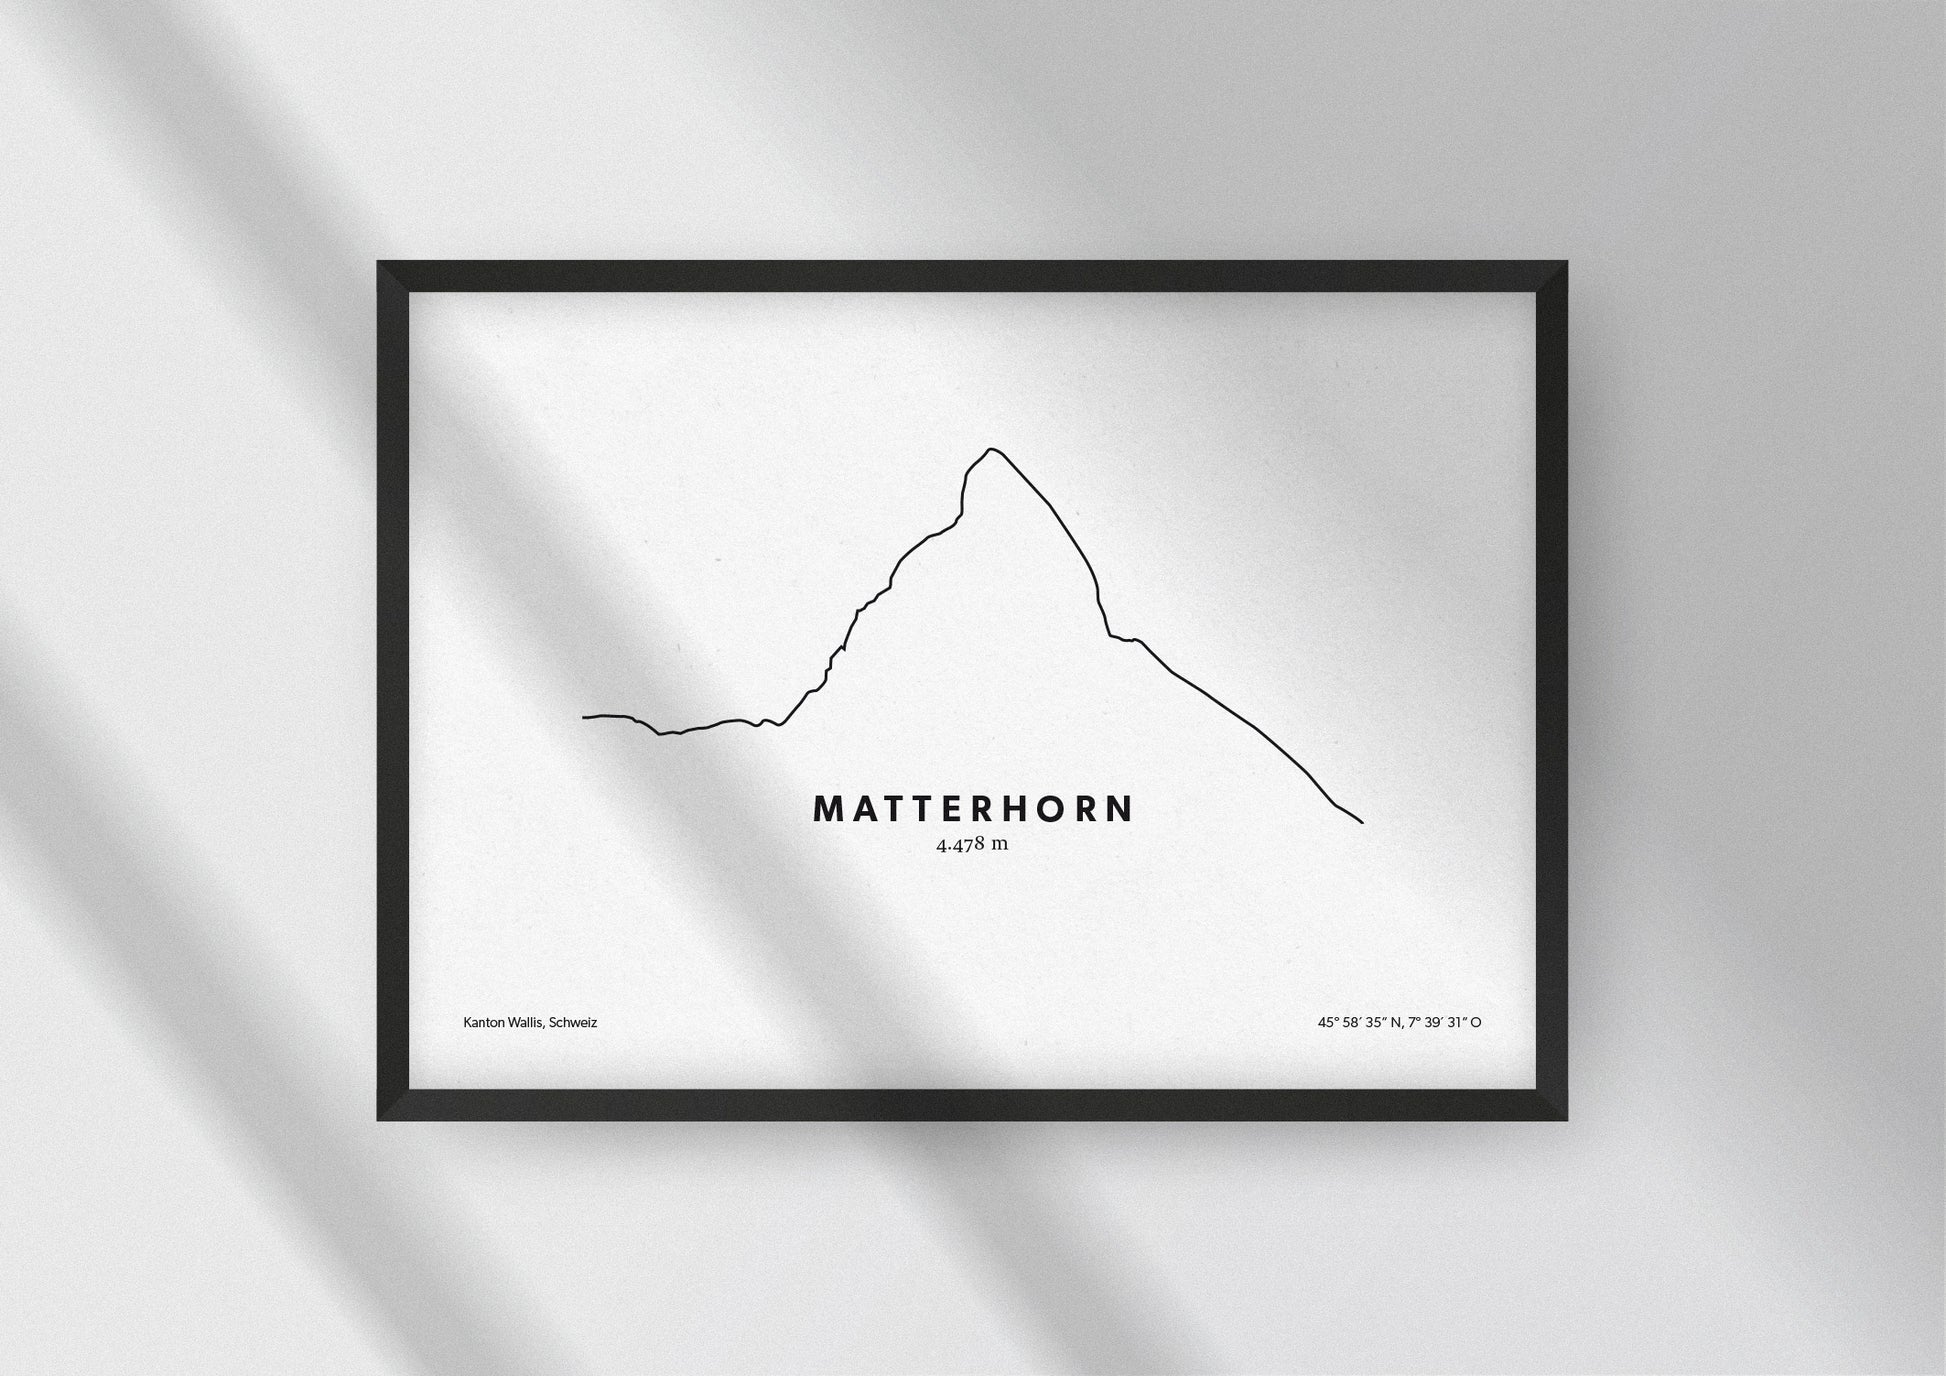 Minimalistische Illustration des Matterhon in der Schweiz, als stilvoller Einrichtungsgegenstand für Zuhause.